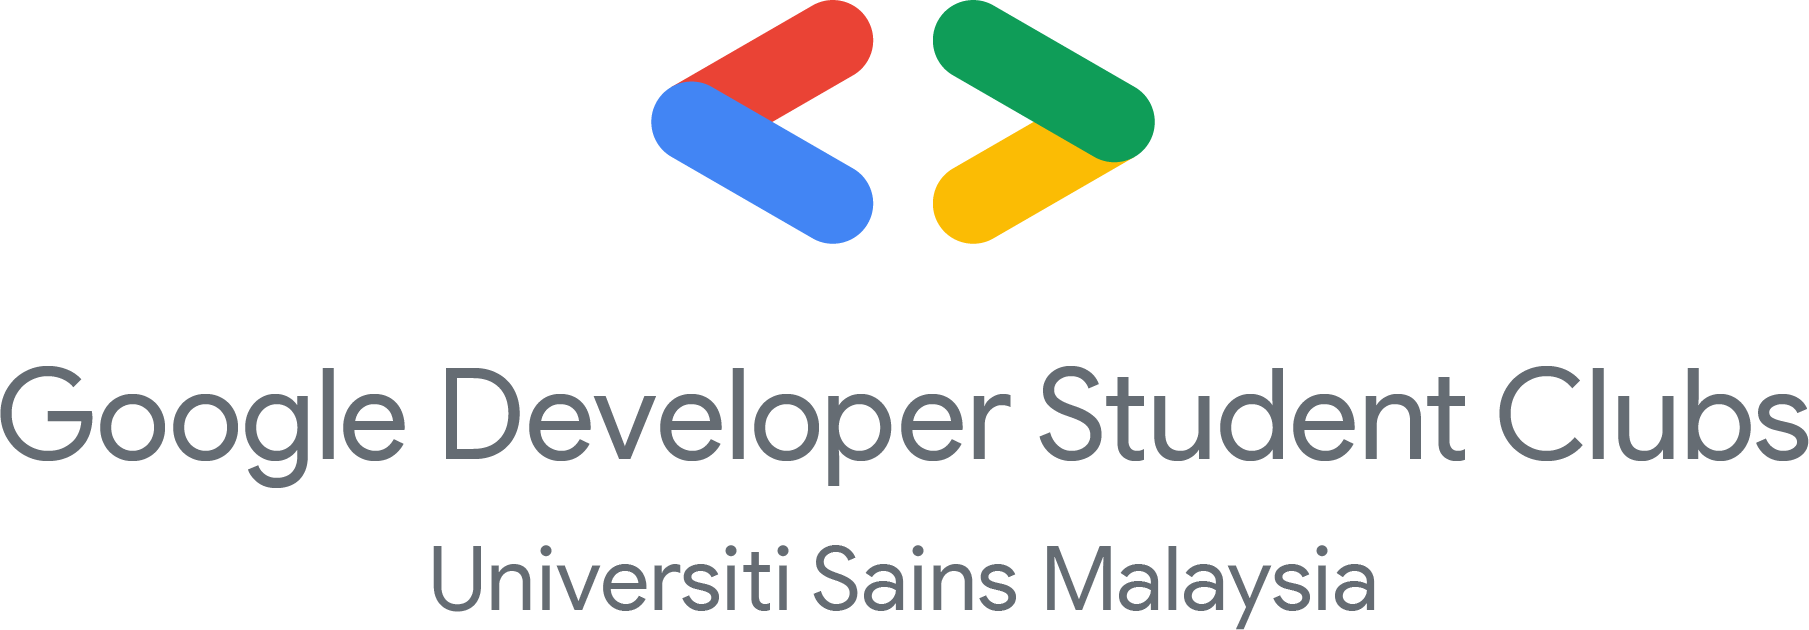 Google Developer Student Clubs USM